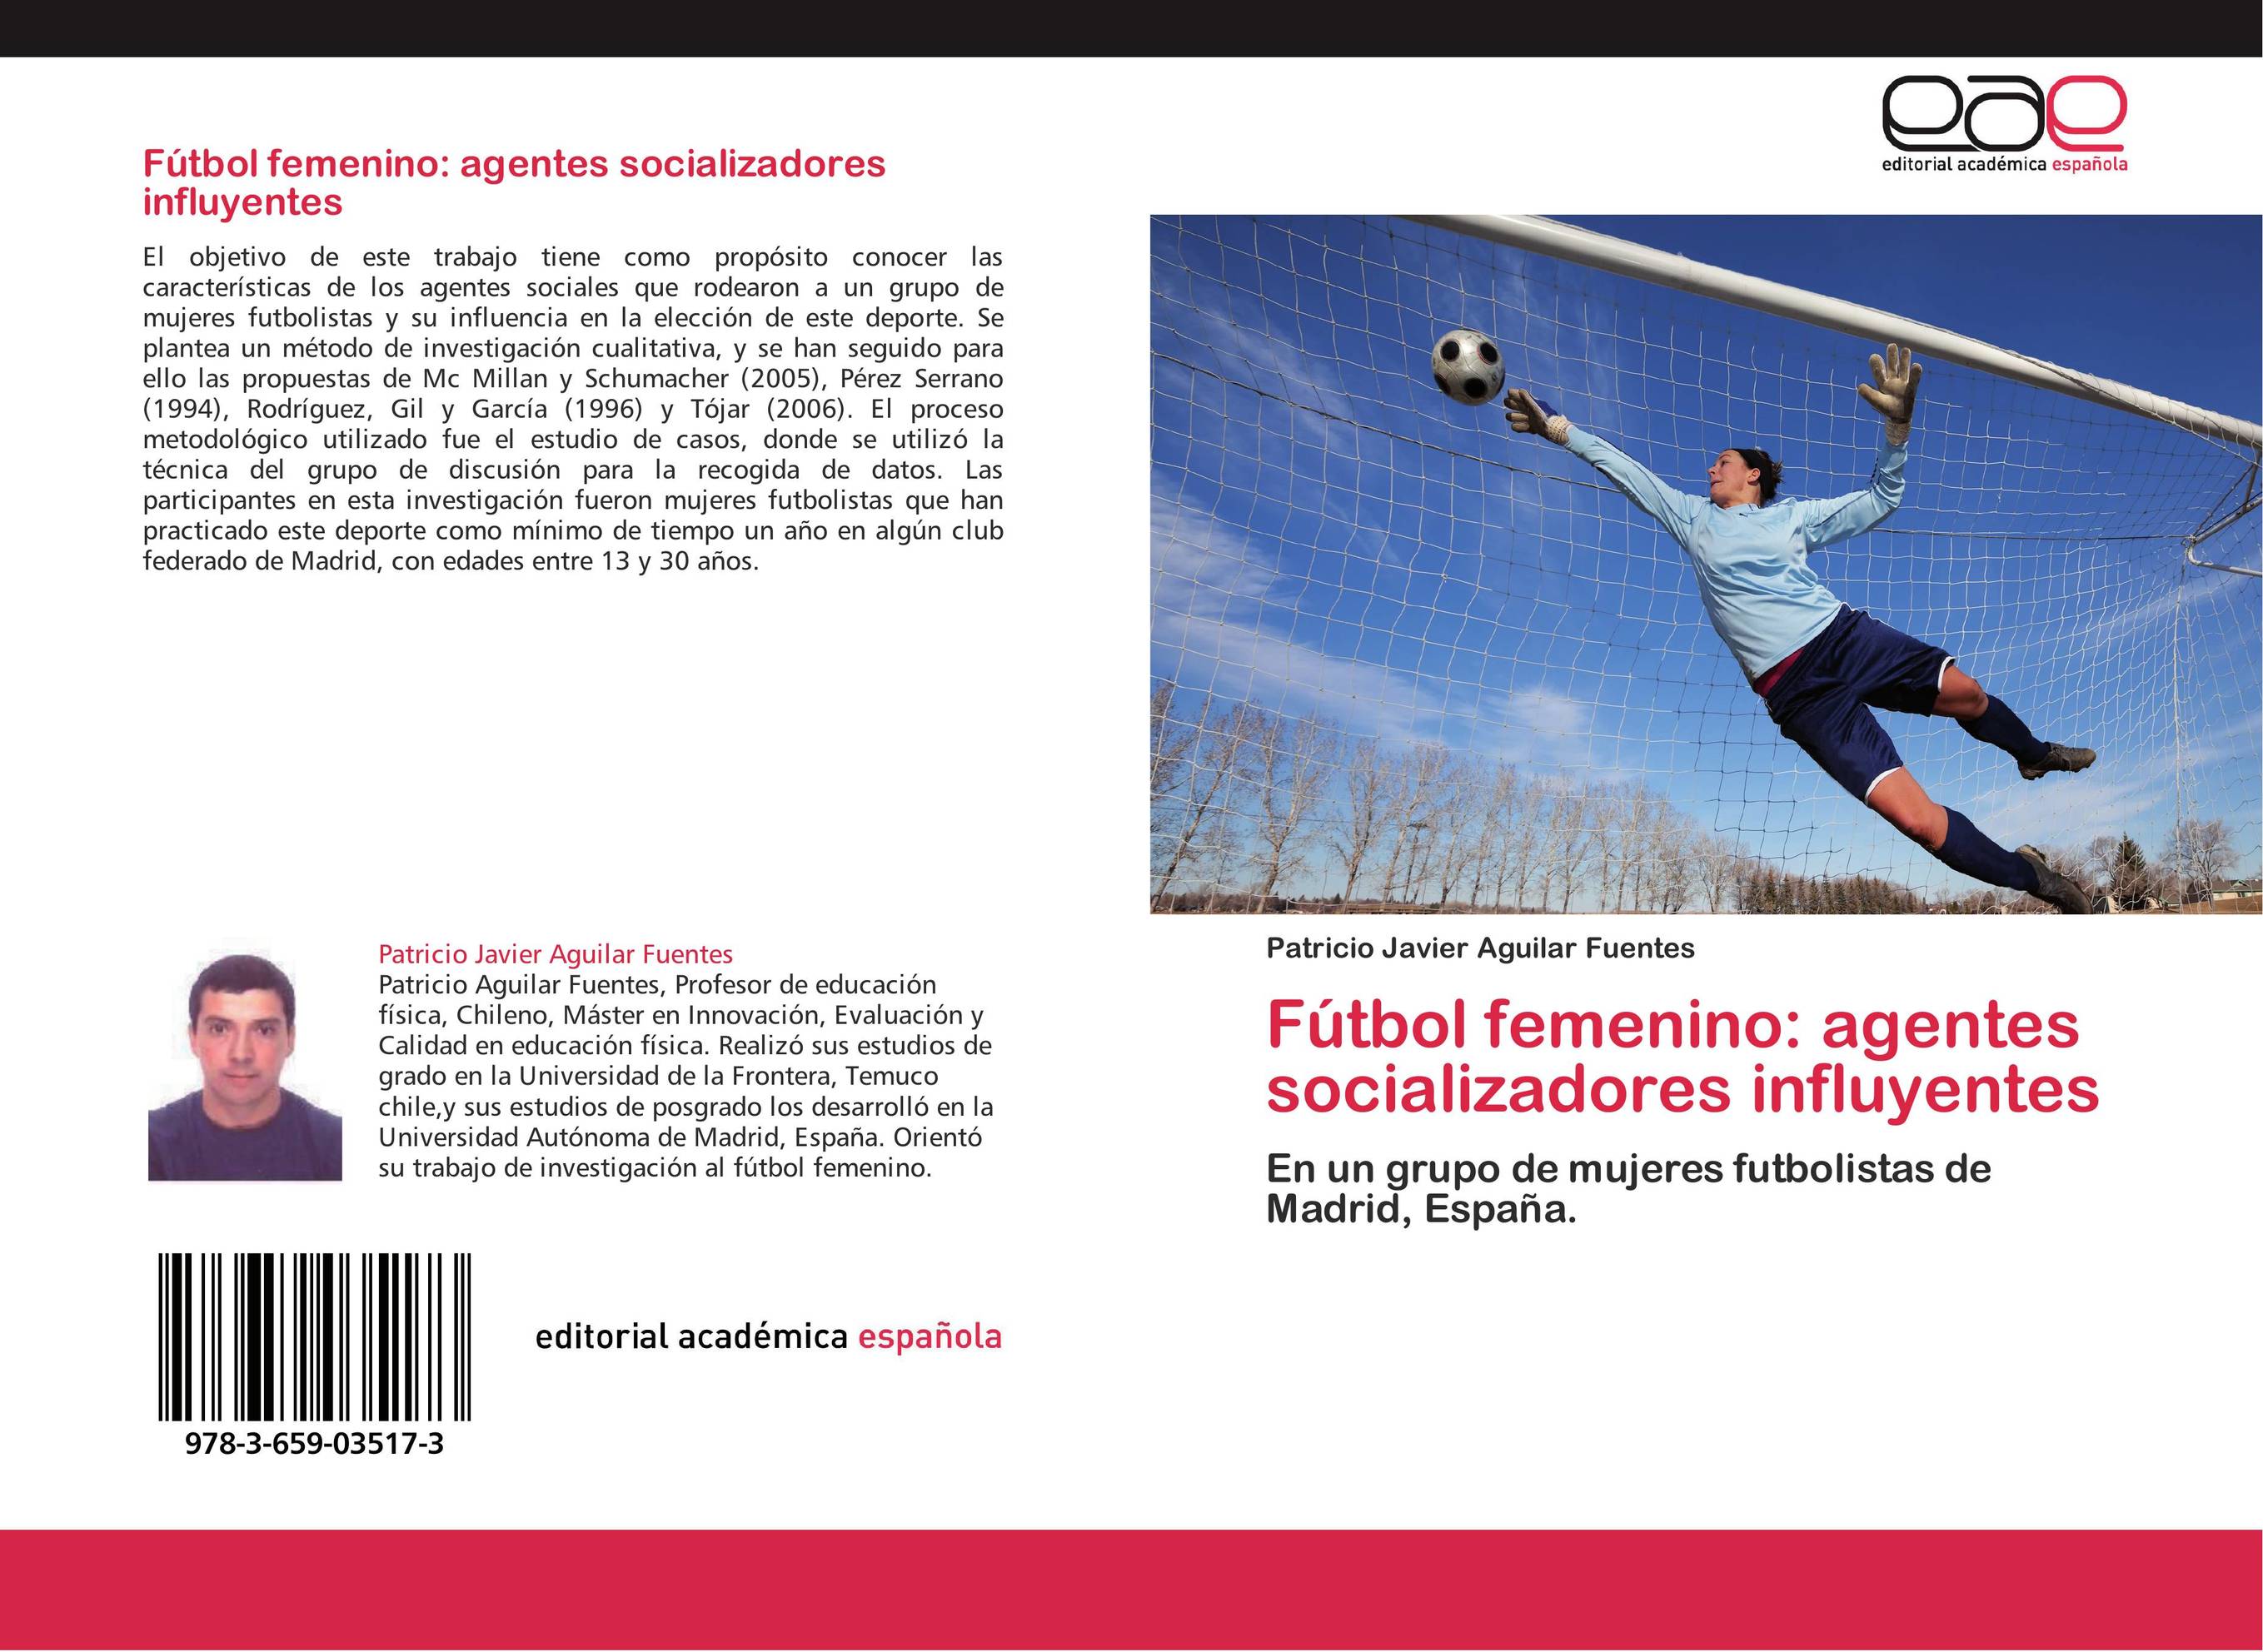 Fútbol femenino: agentes socializadores influyentes